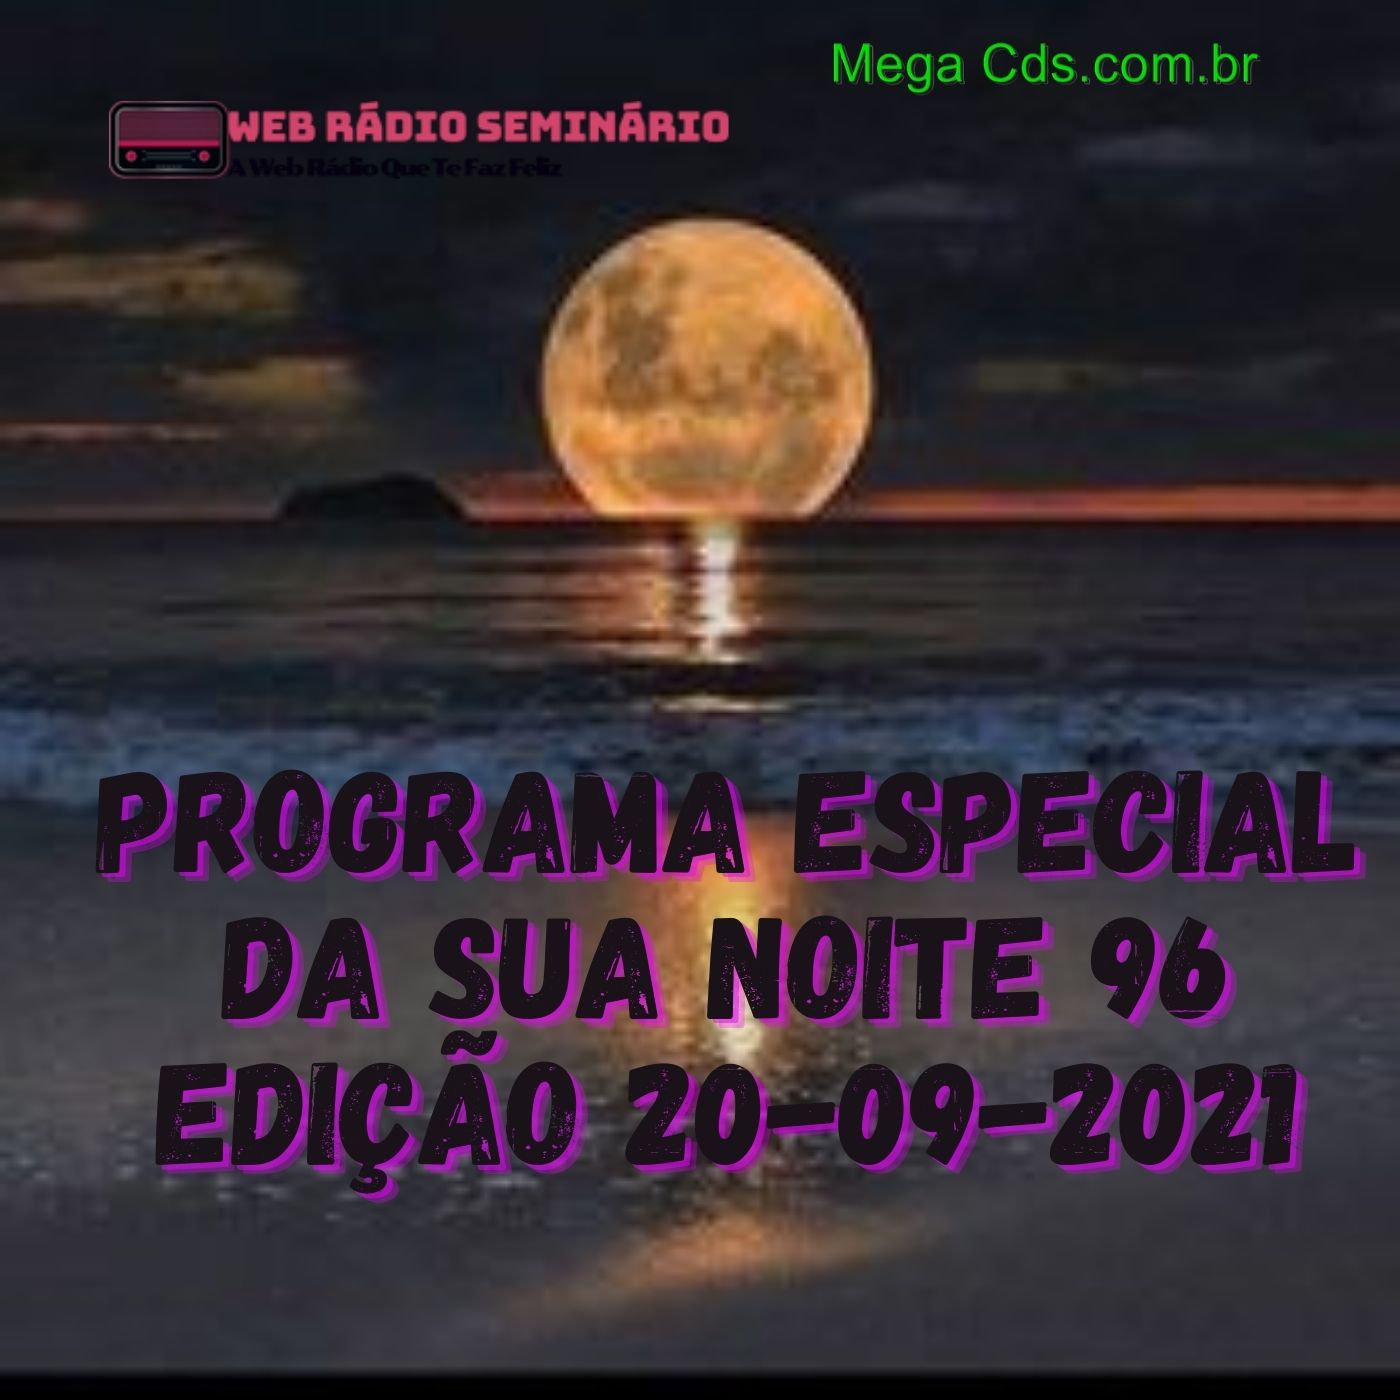 PROGRAMA ESPECIAL DA SUA NOITE-96 EDIÇAO 20-09-2021